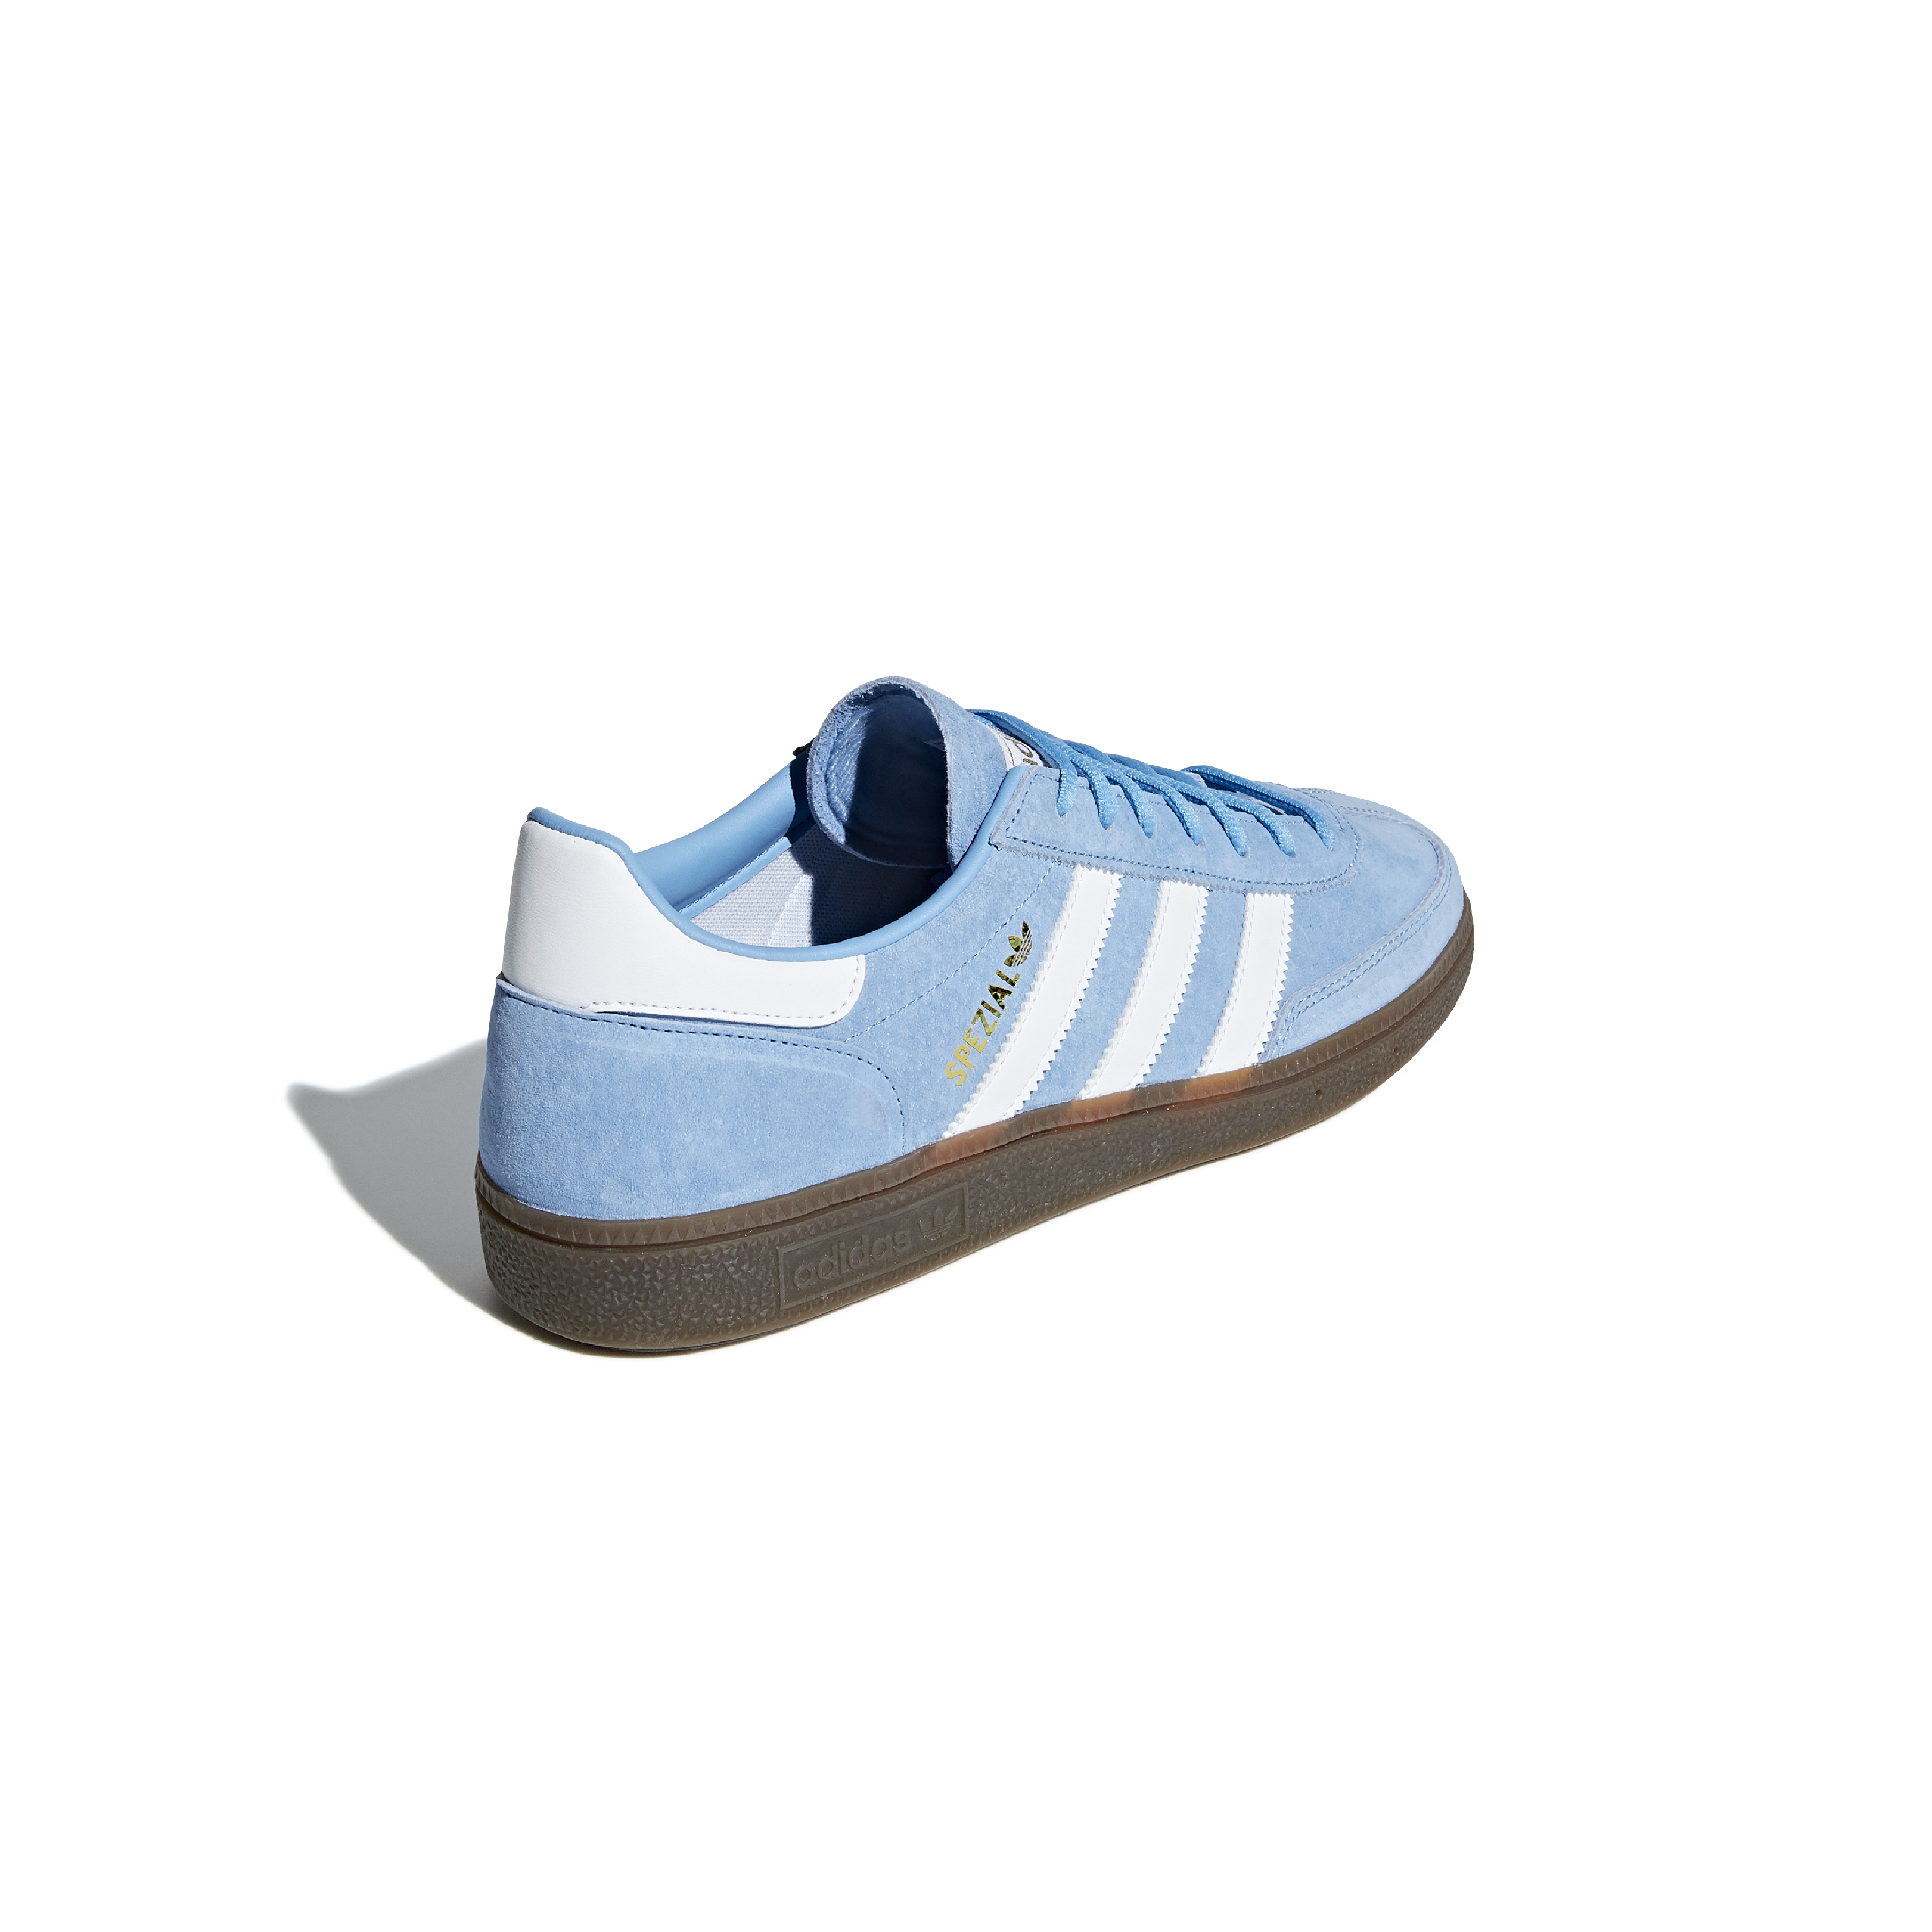 adidas Handball Spezial Light Blue / White / Gum